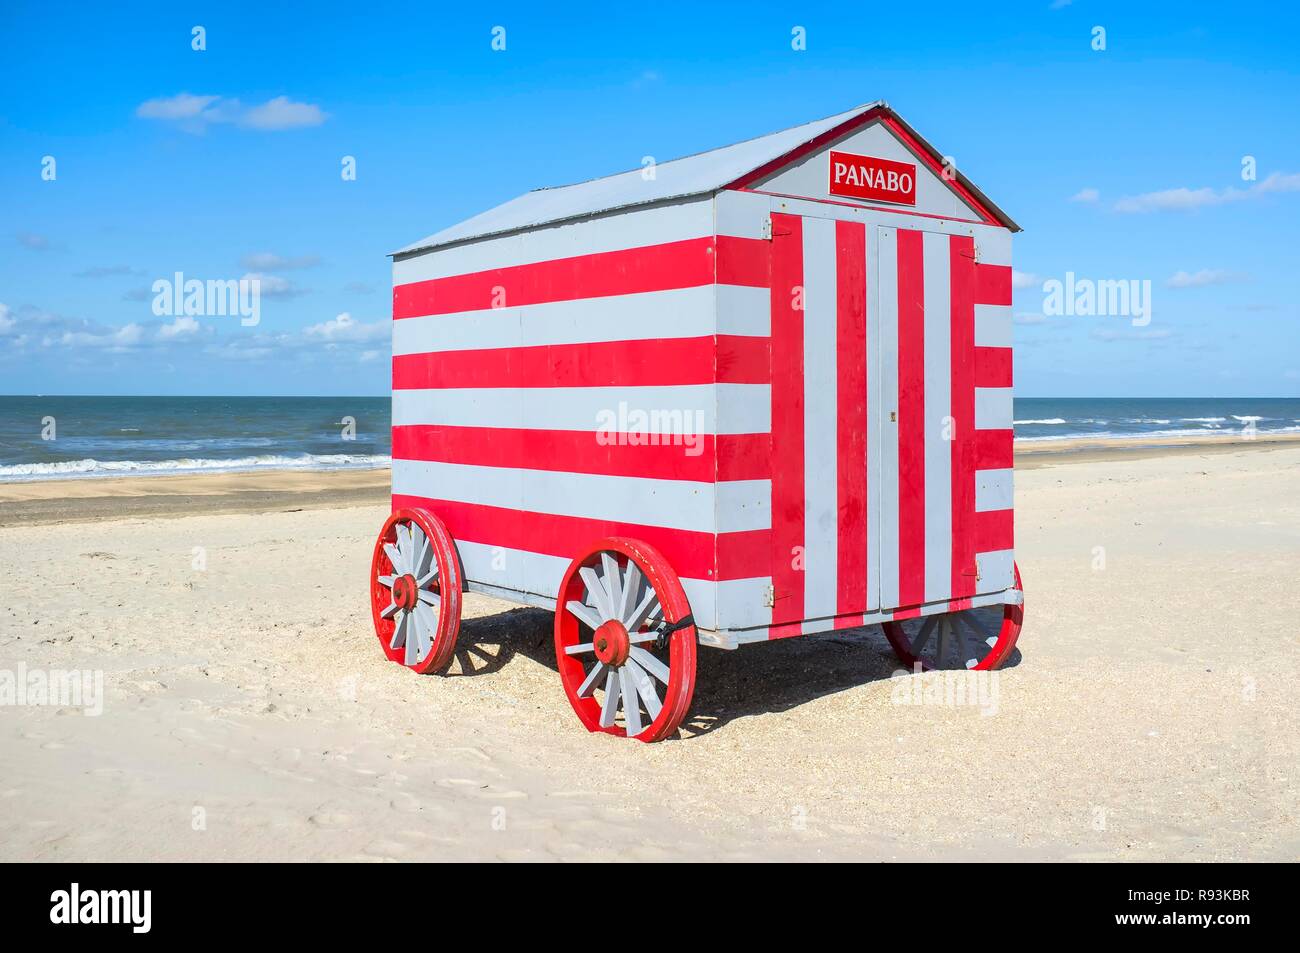 Cabane de plage, De Panne Beach, Flandre occidentale, Belgique, Europe Banque D'Images